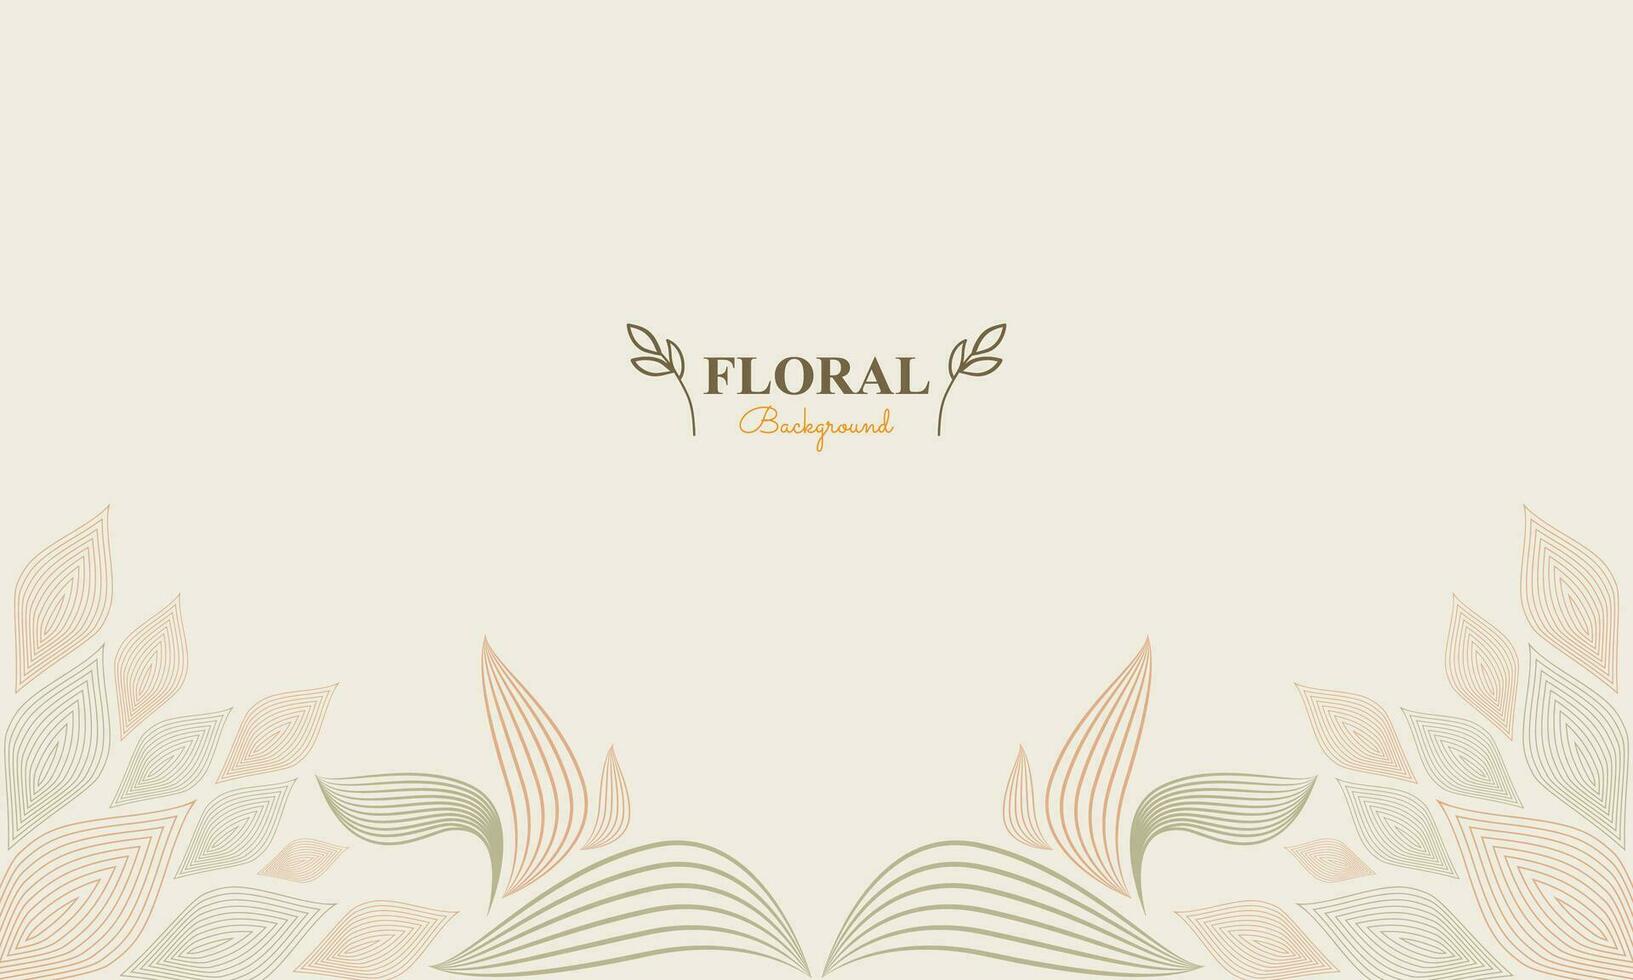 resumen floral antecedentes con resumen natural forma, hoja y floral ornamento en suave color diseño vector